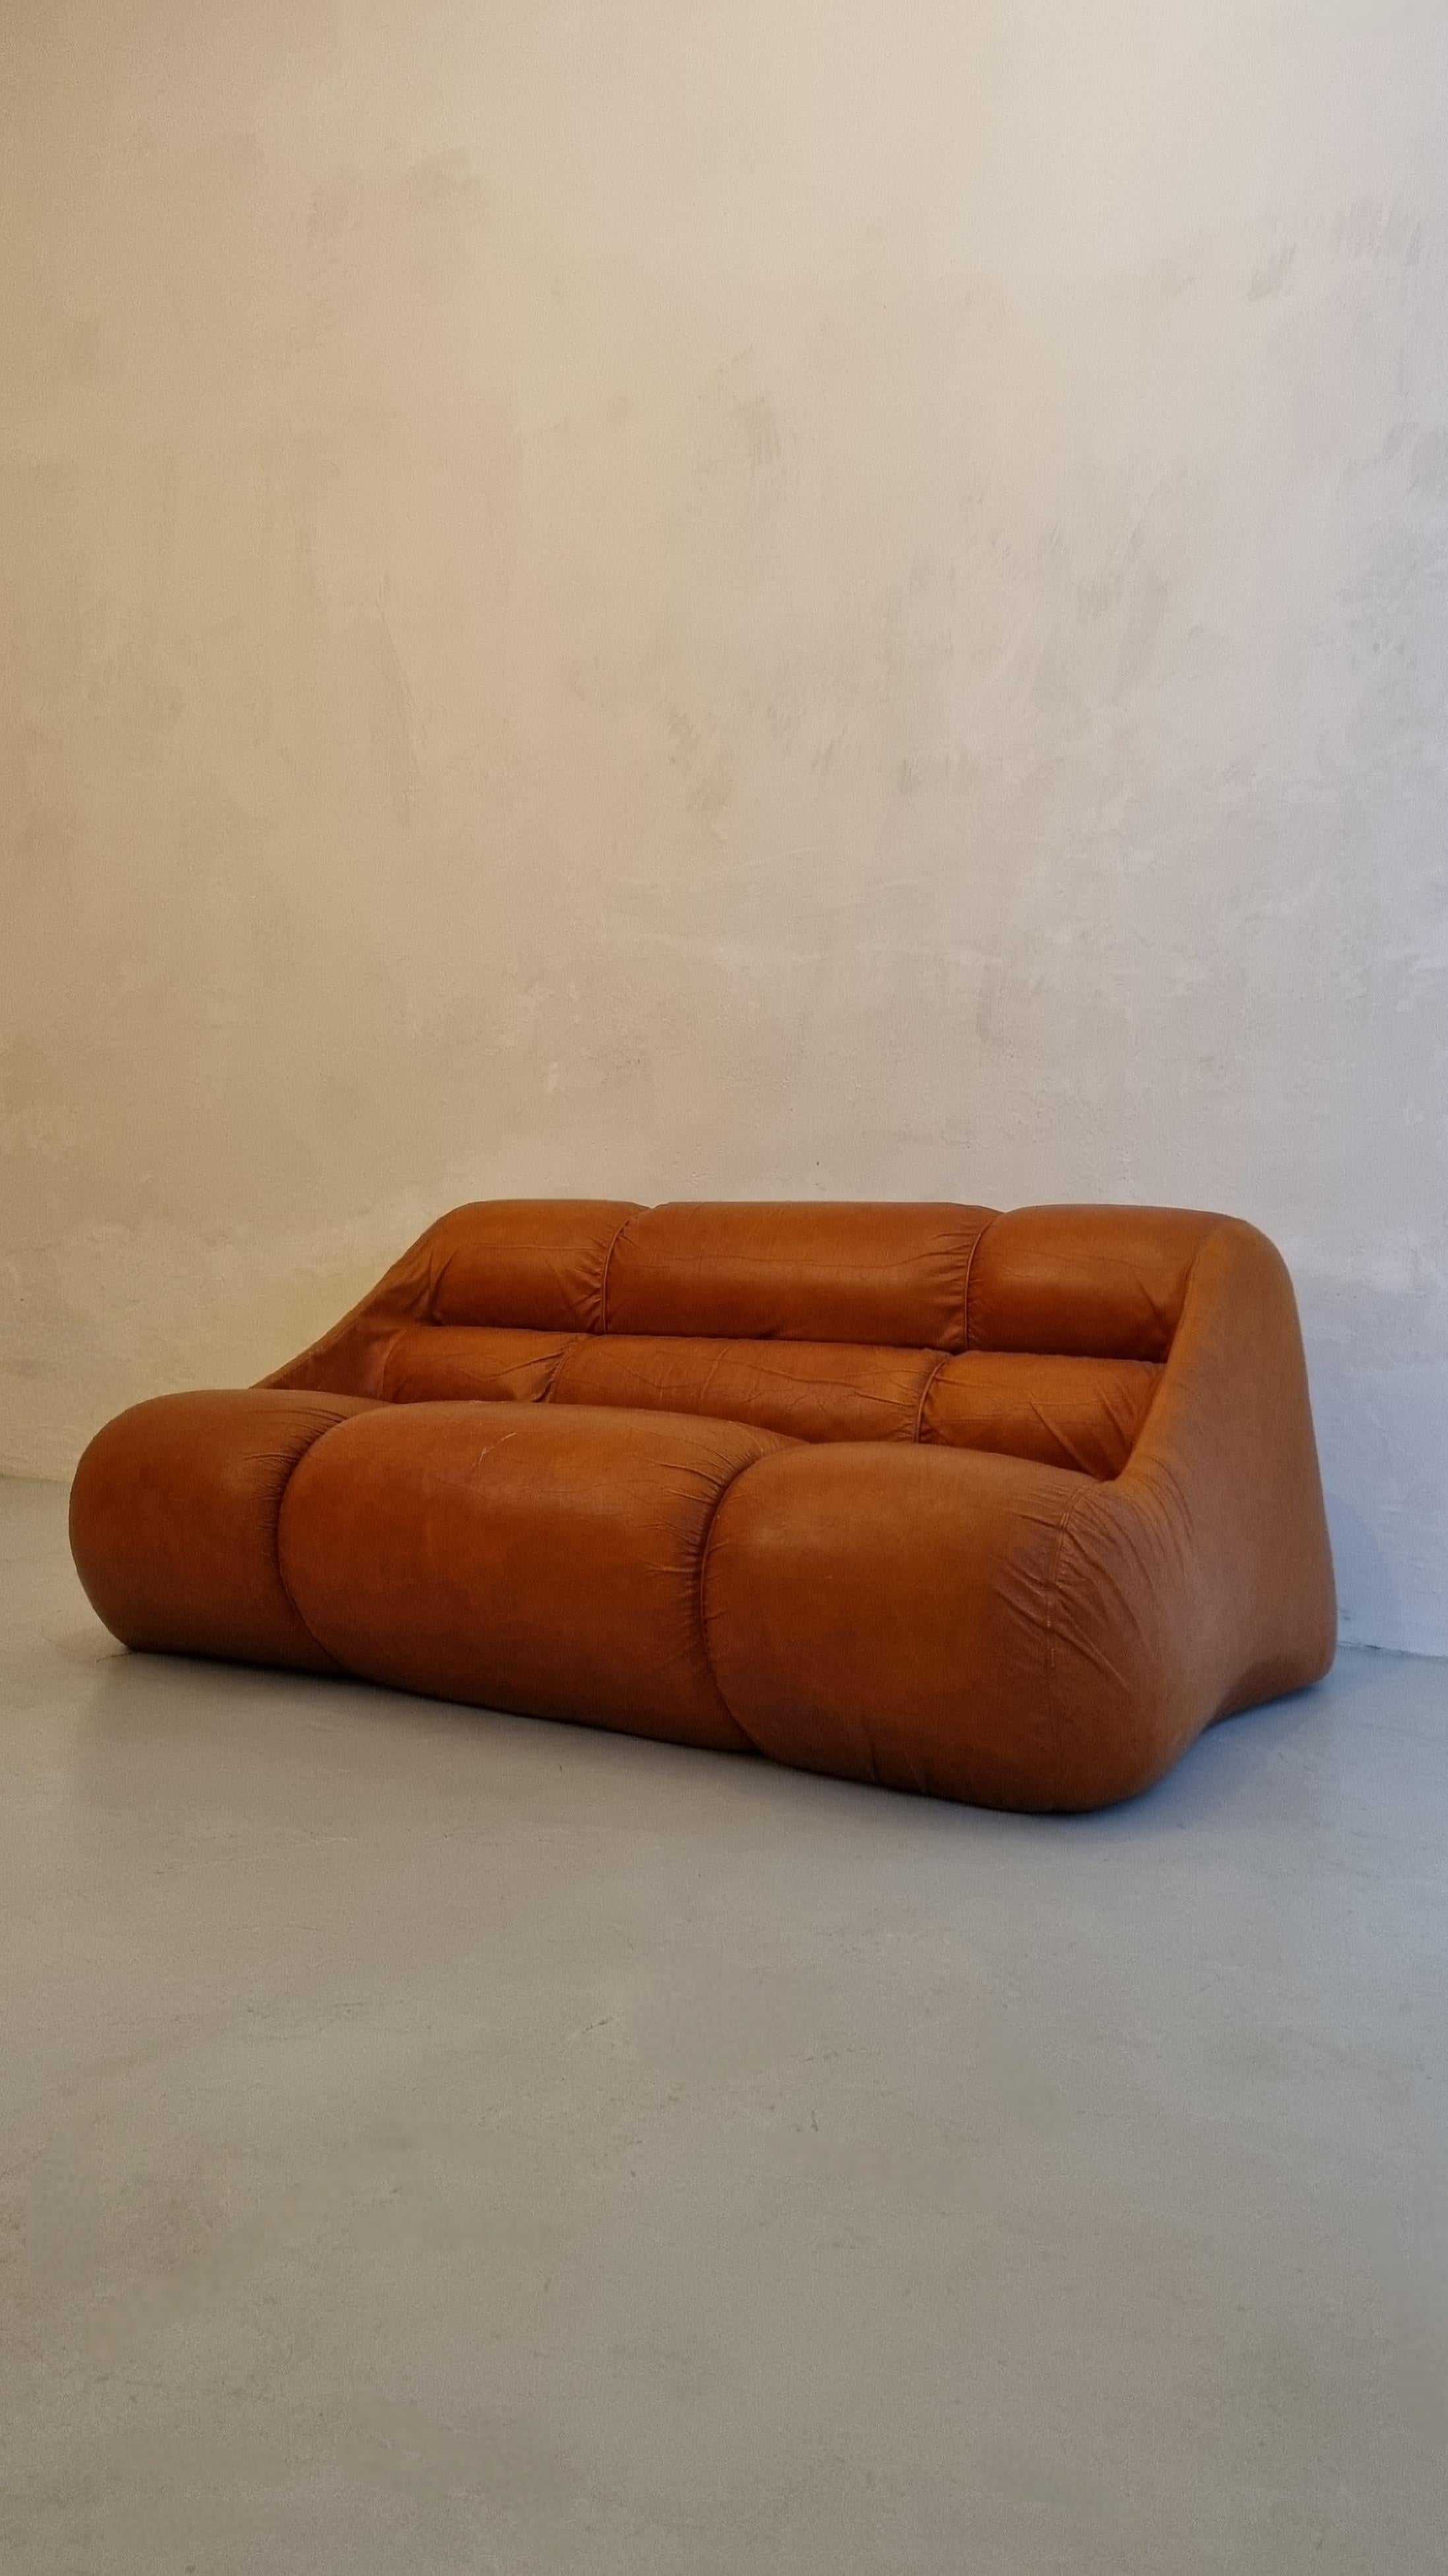 Ciuingam 2-Sitzer-Sofa, entworfen von dem Designer-Trio De Pas D' Urbino & Lomazzi für BBB Bonacina im Jahr 1967.
Schaumgummipolsterung, Originalleder, Kunststoff.
Guter Zustand, die Haut ist im Sitzen leicht abgenutzt.
Jonathan De Pas (Mailand 1932